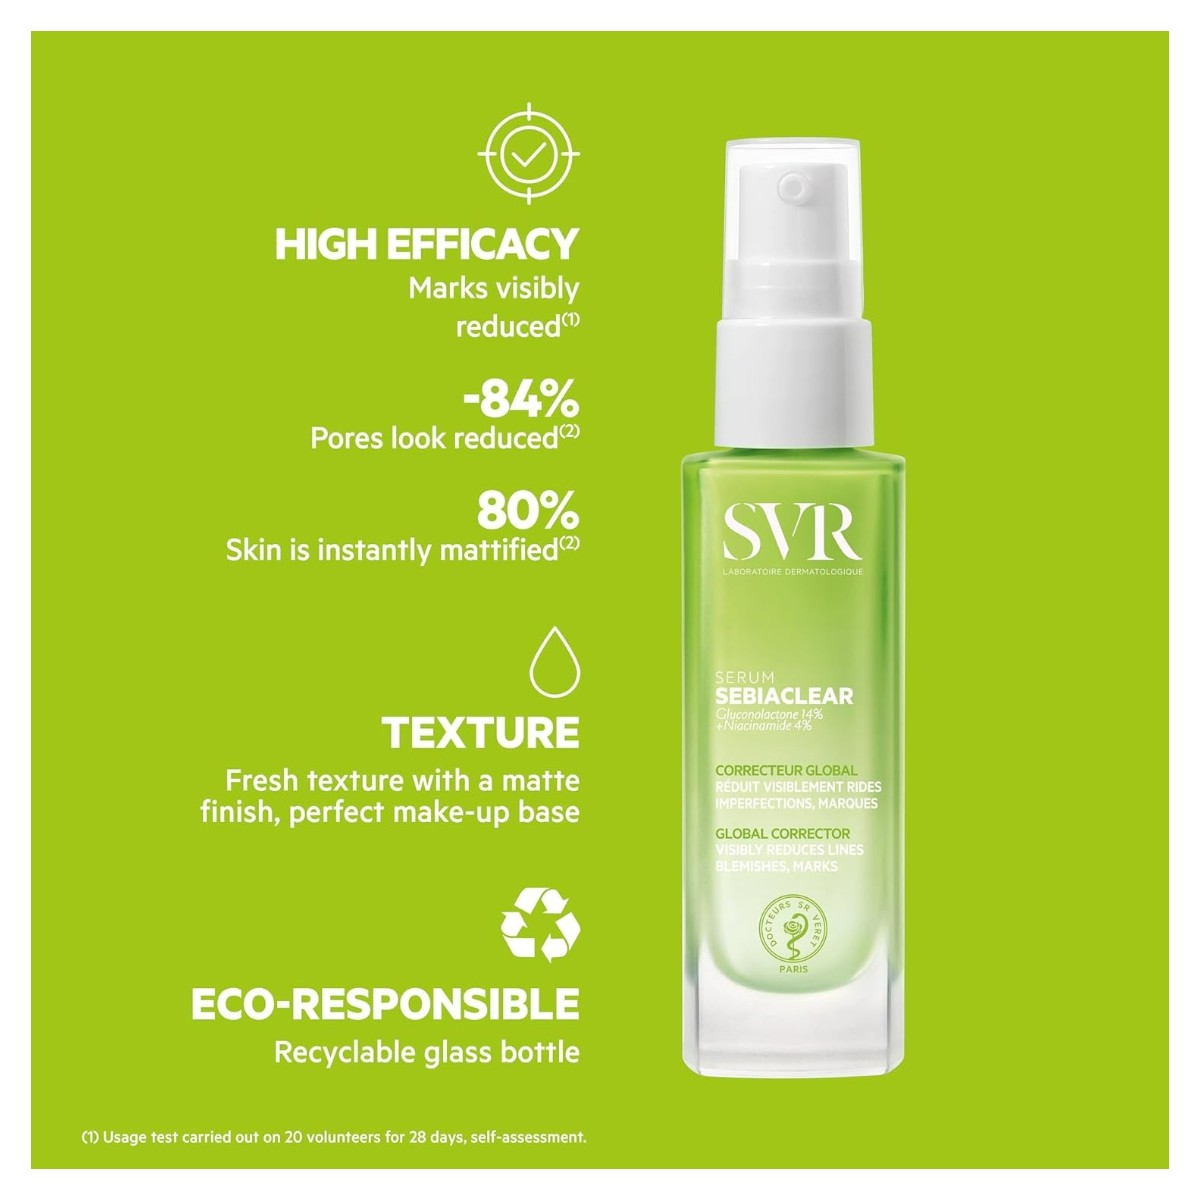 SVR Sebiaclear Serum Anti-acne y anti arrugas pieles maduras y sensibles 30ml